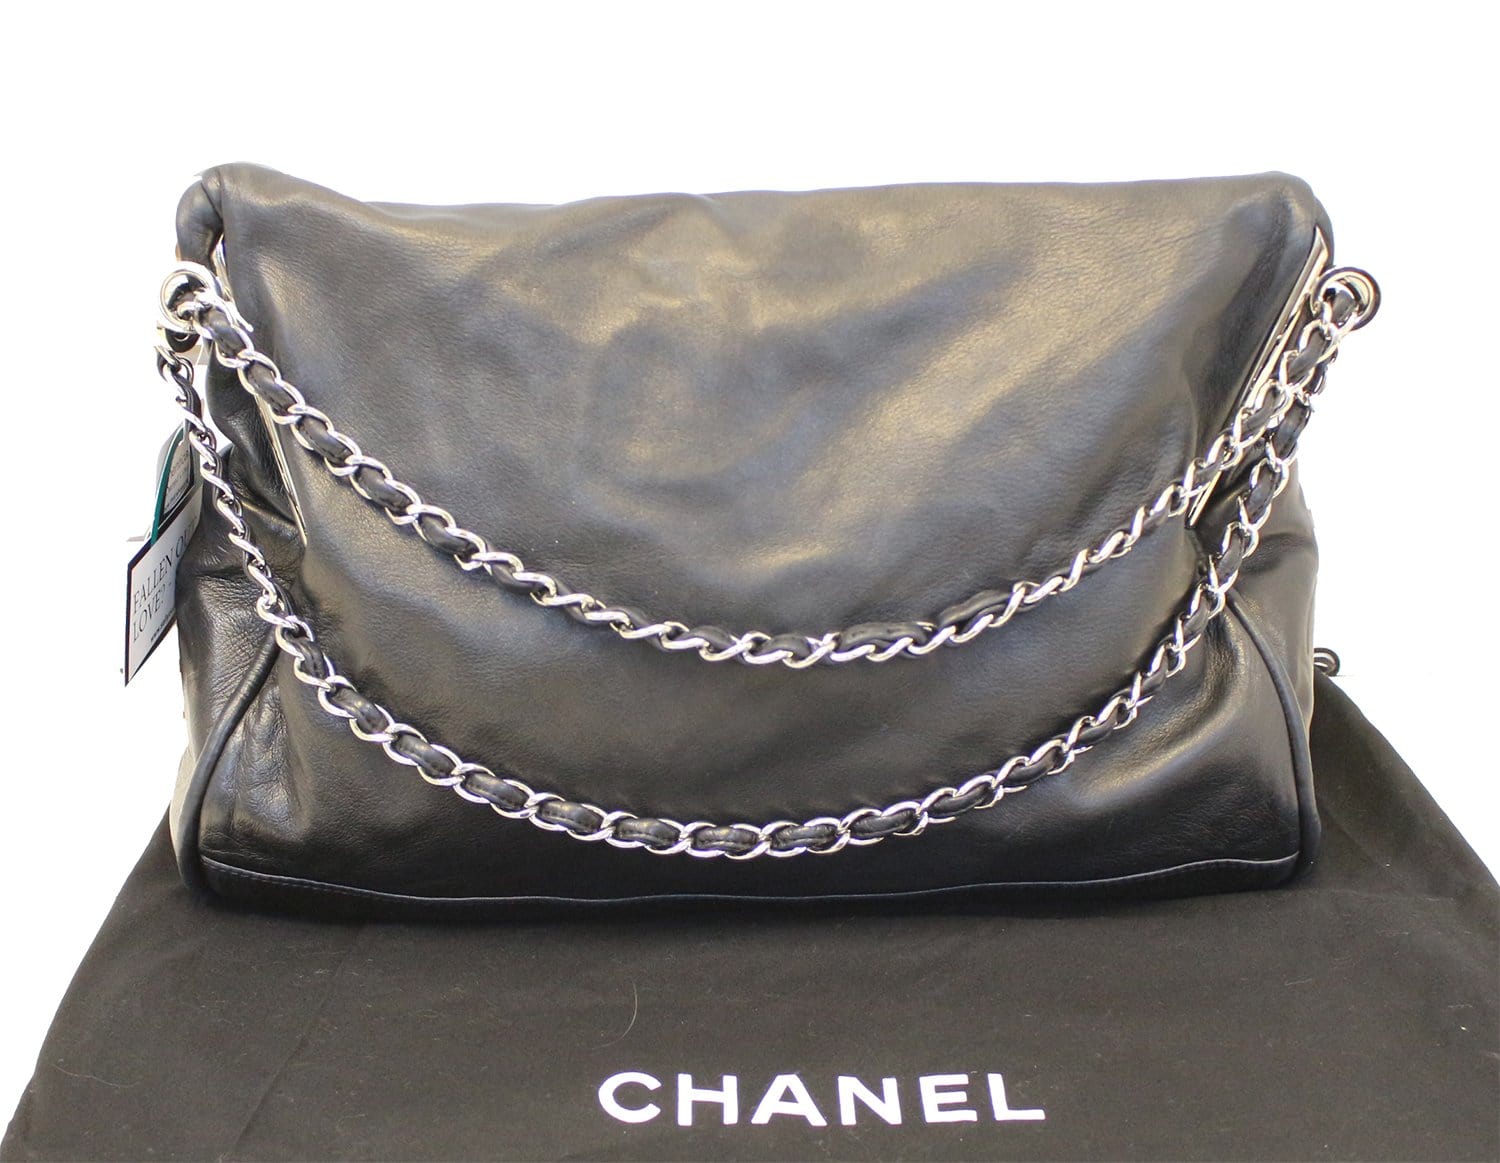 Chanel Boy Bags, Chanel Boy Handbags for Sale